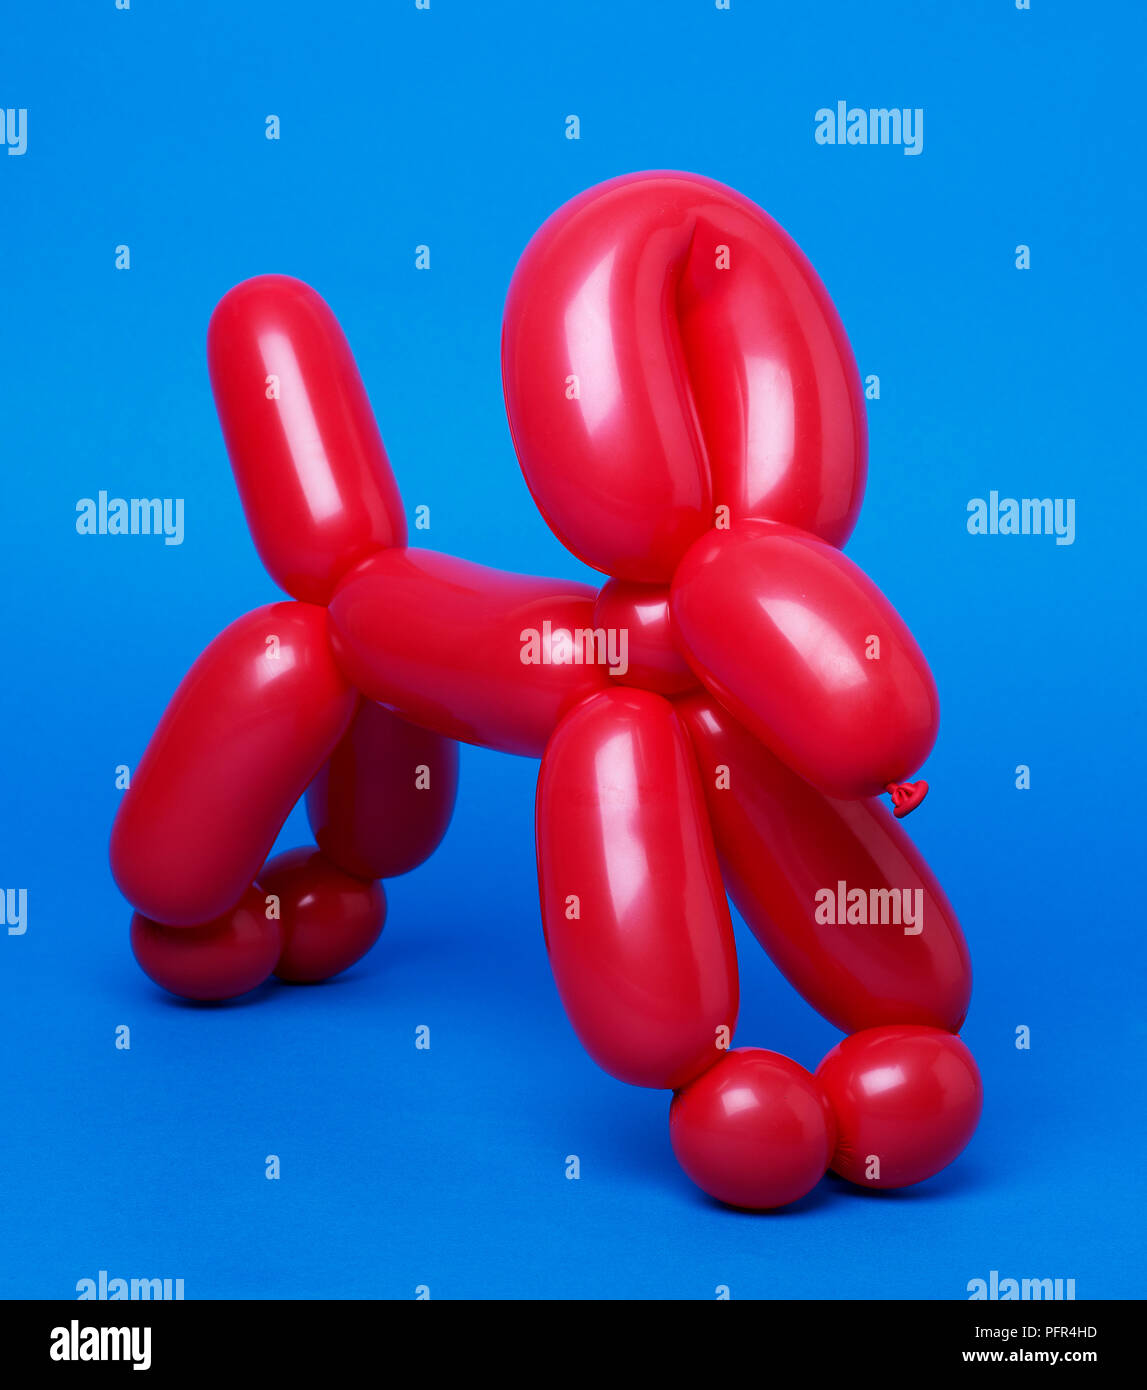 Ballon rouge chien sur fond bleu Banque D'Images